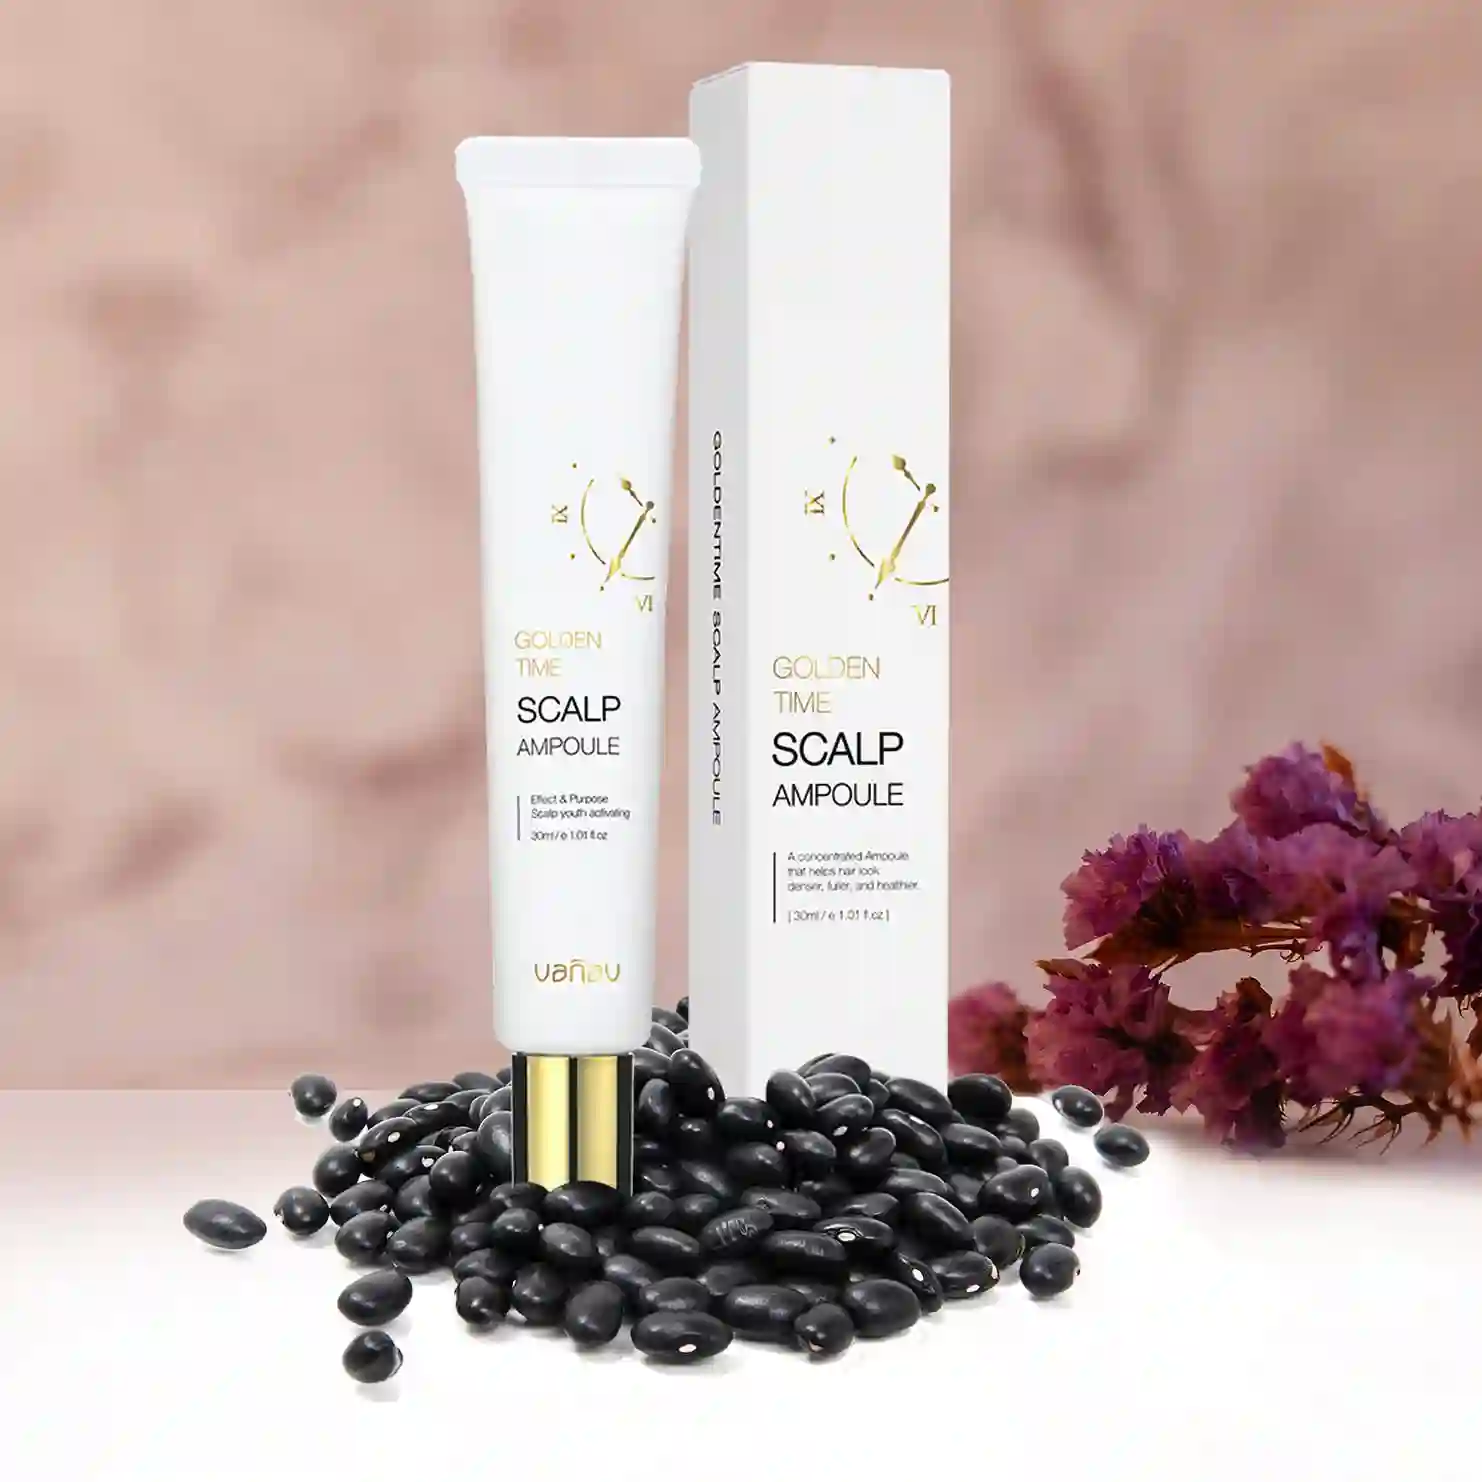 VANAV Golden Time Scalp Ampoule - beauty products online dubai